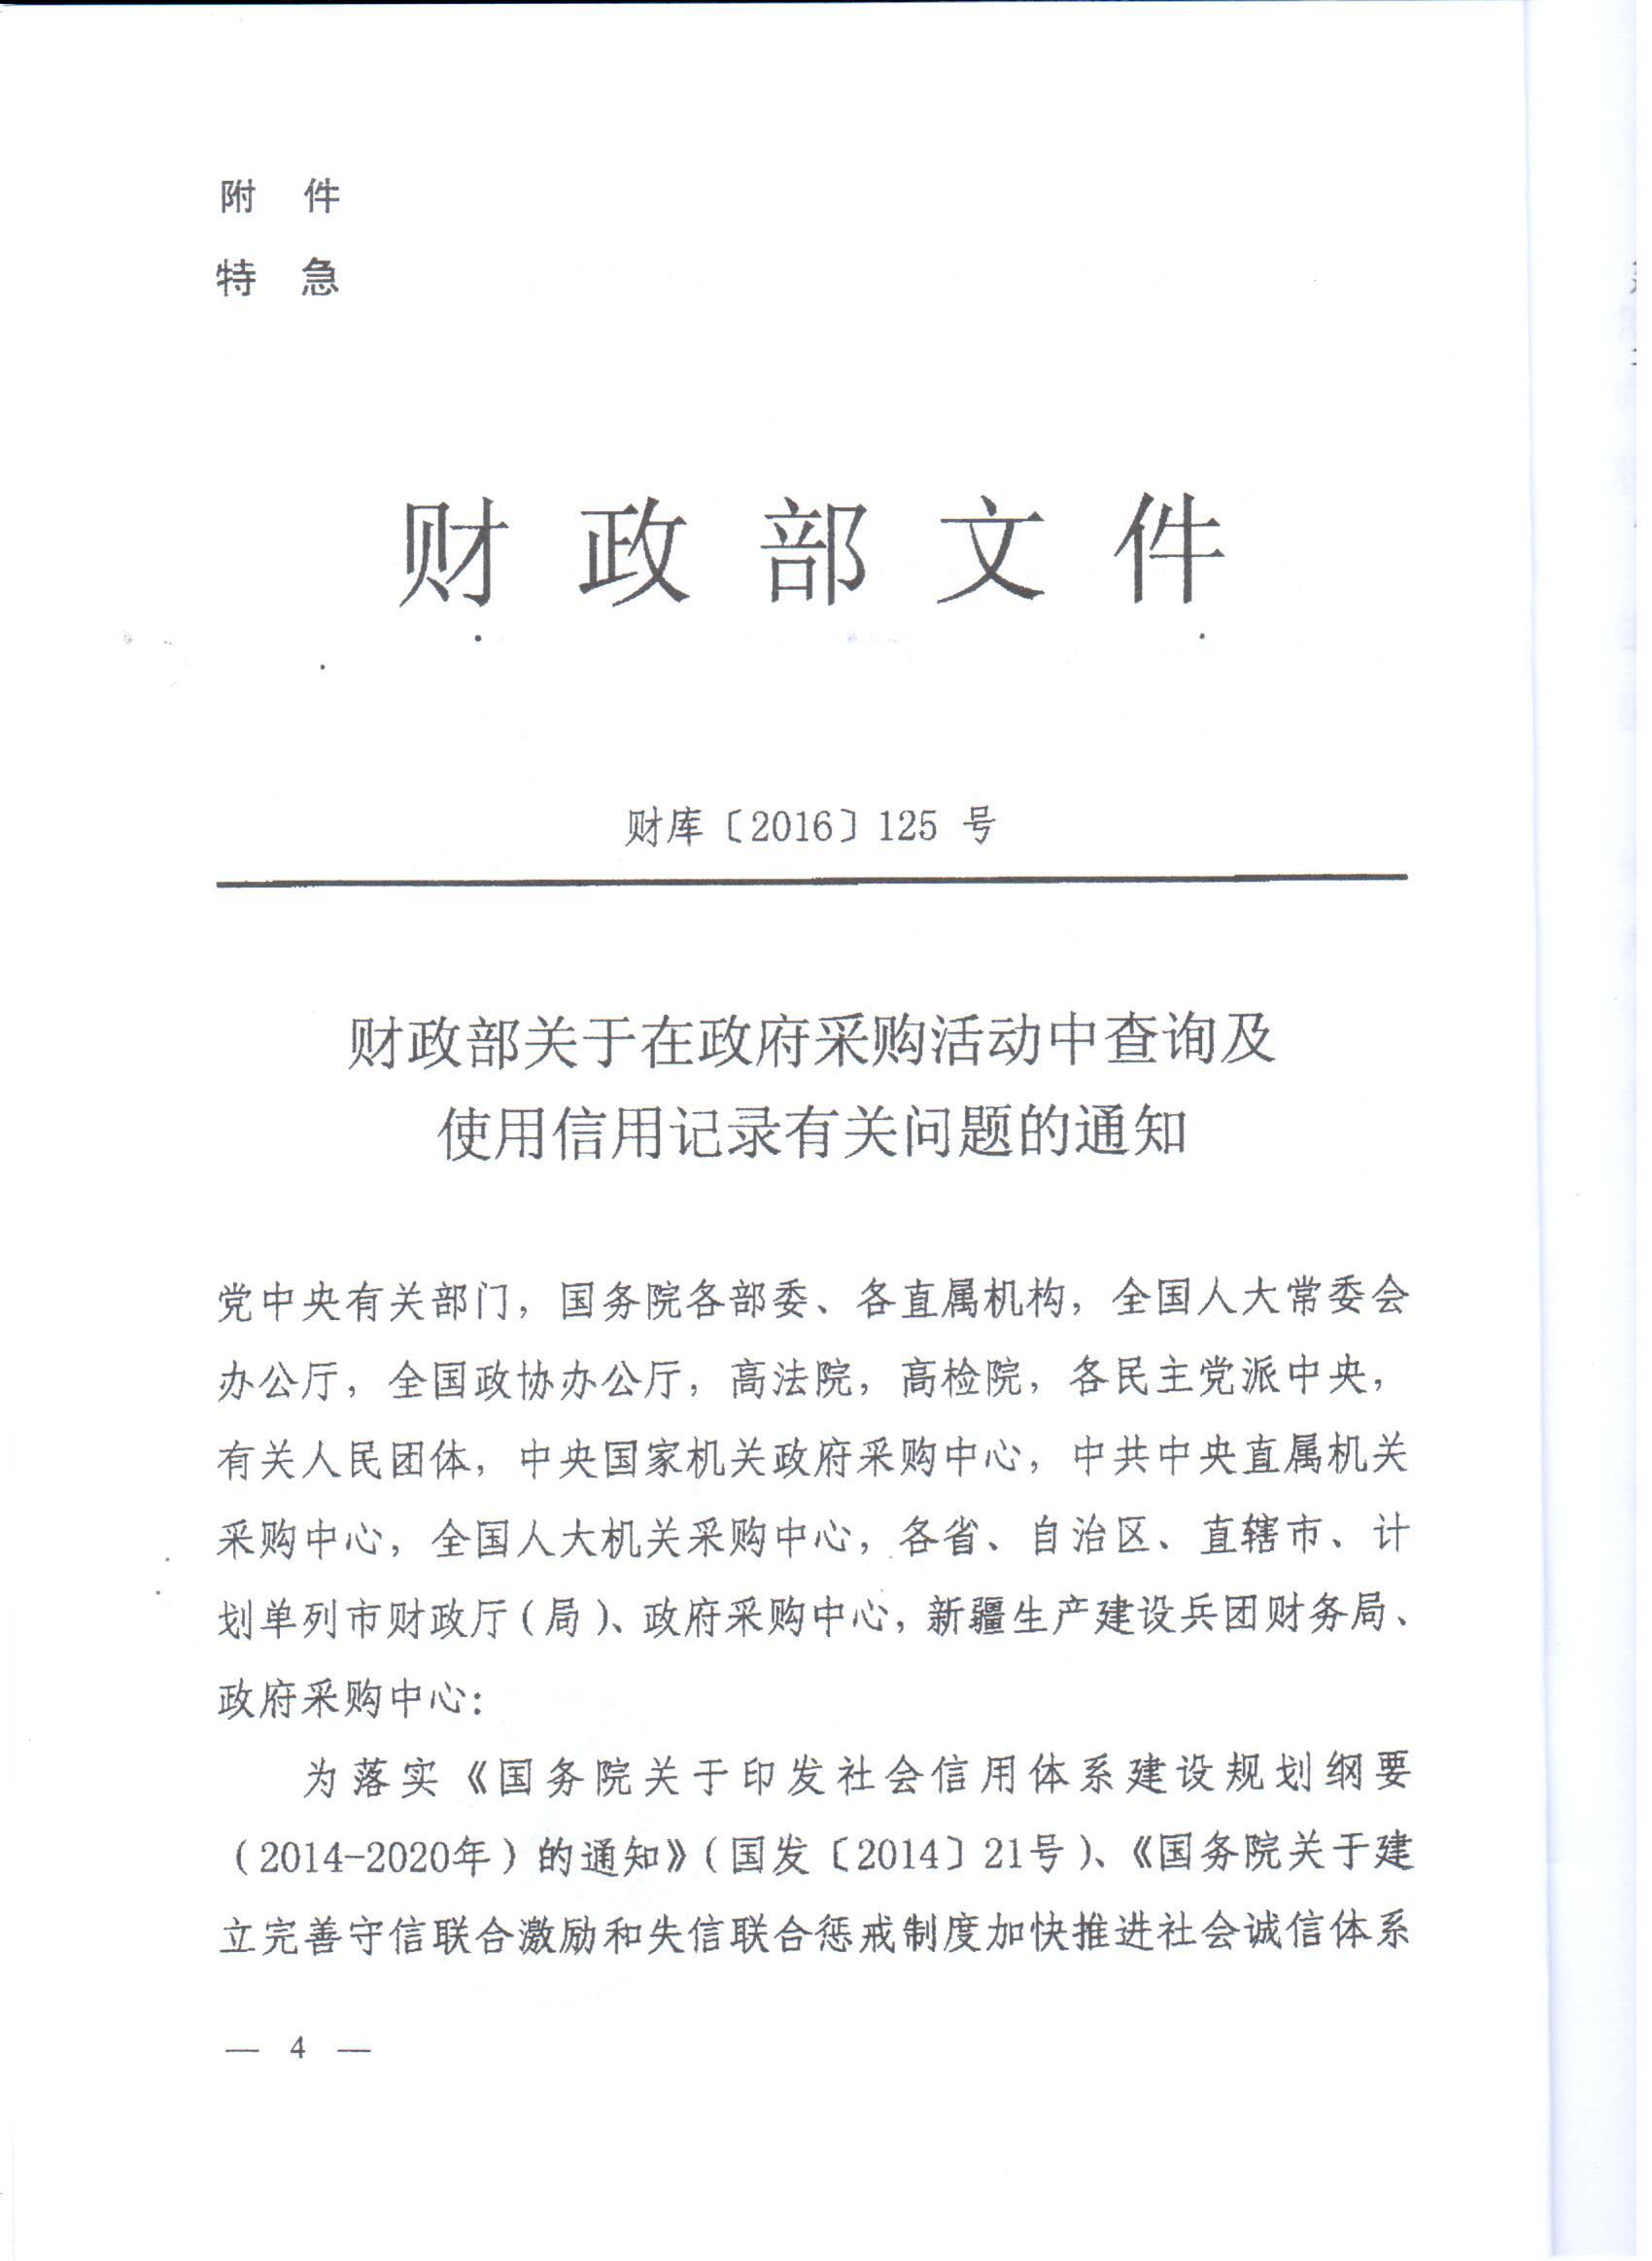 河南省财政厅转发财政部关于在政府采购活动中查询及使用信用记录有关问题的通知的通知(图4)